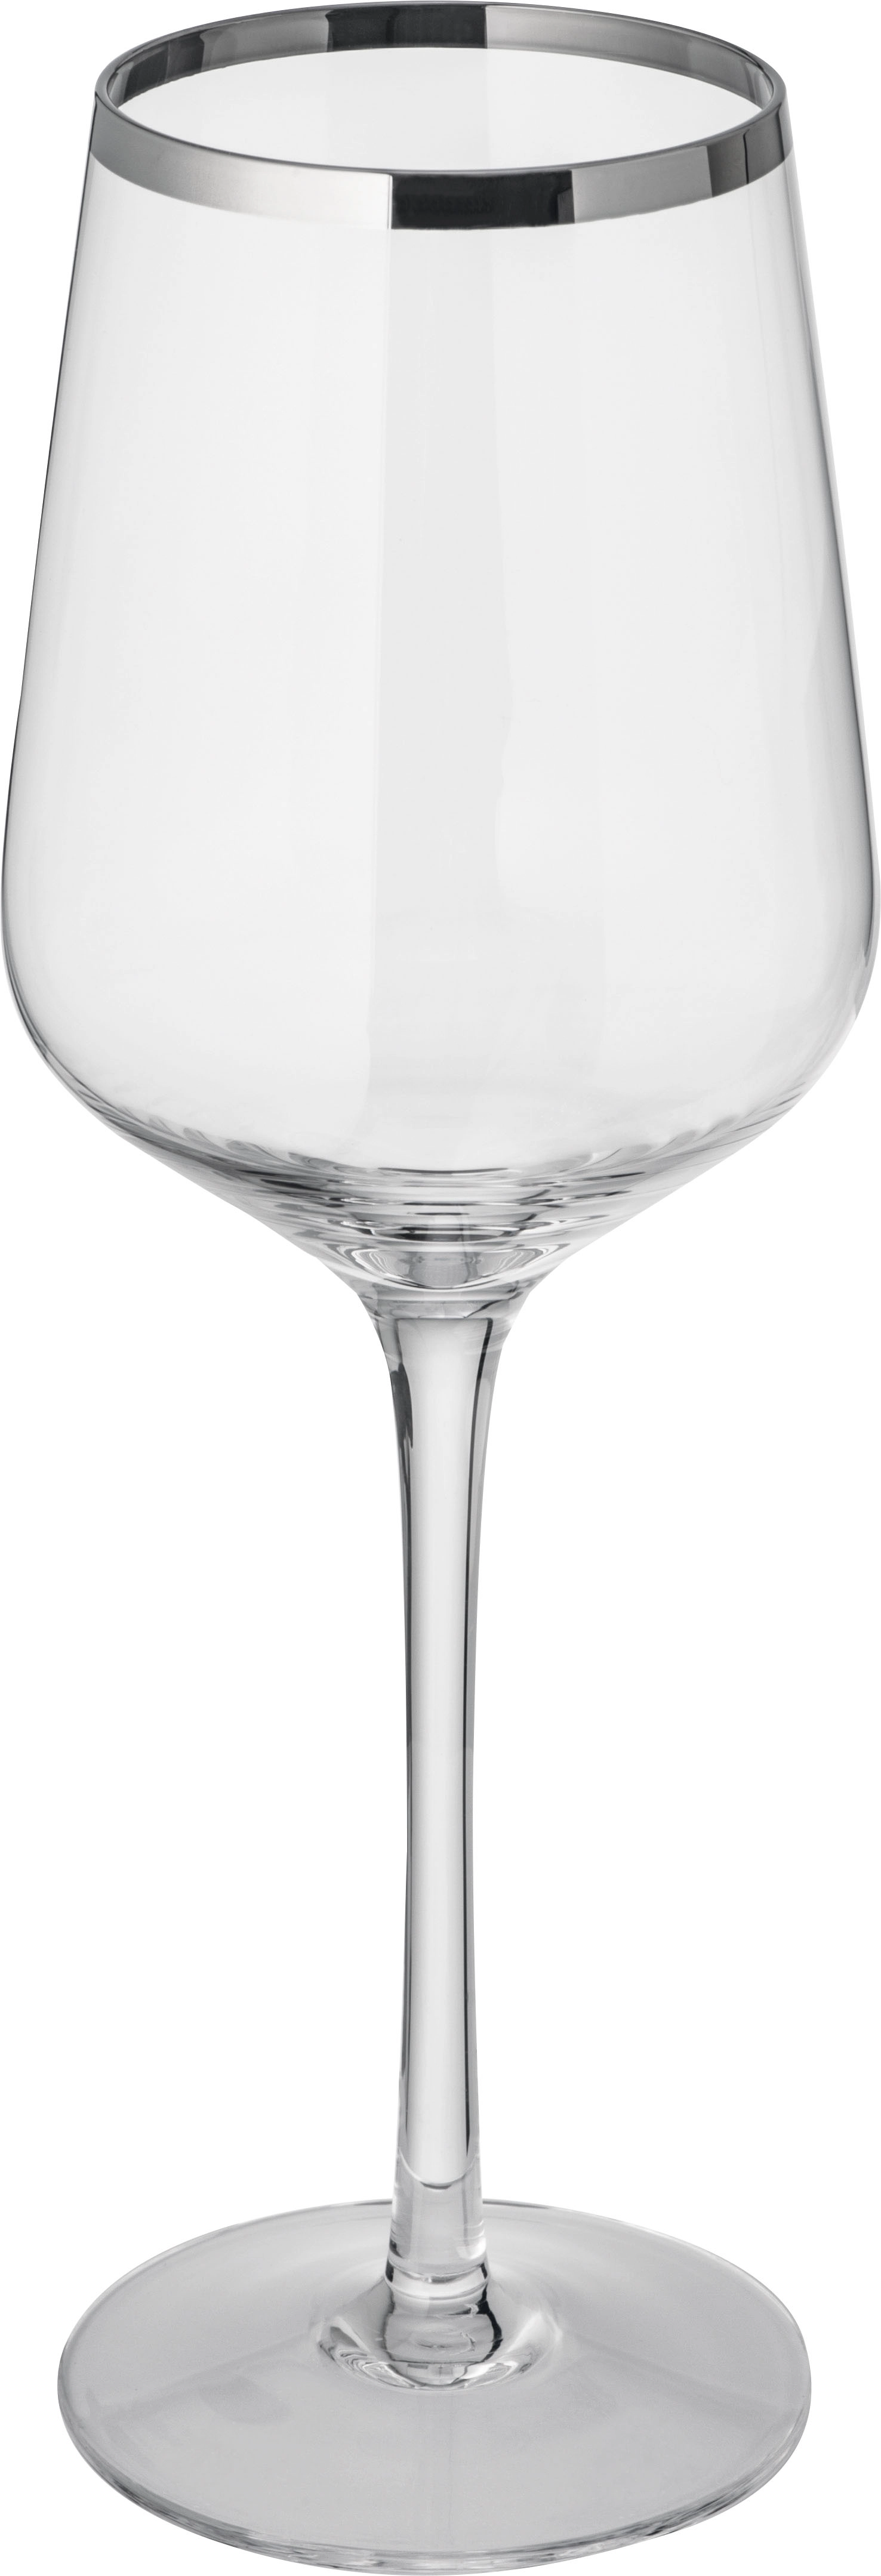 Zestaw kieliszków do wina Ferraghini GM-F228-66 transparentny